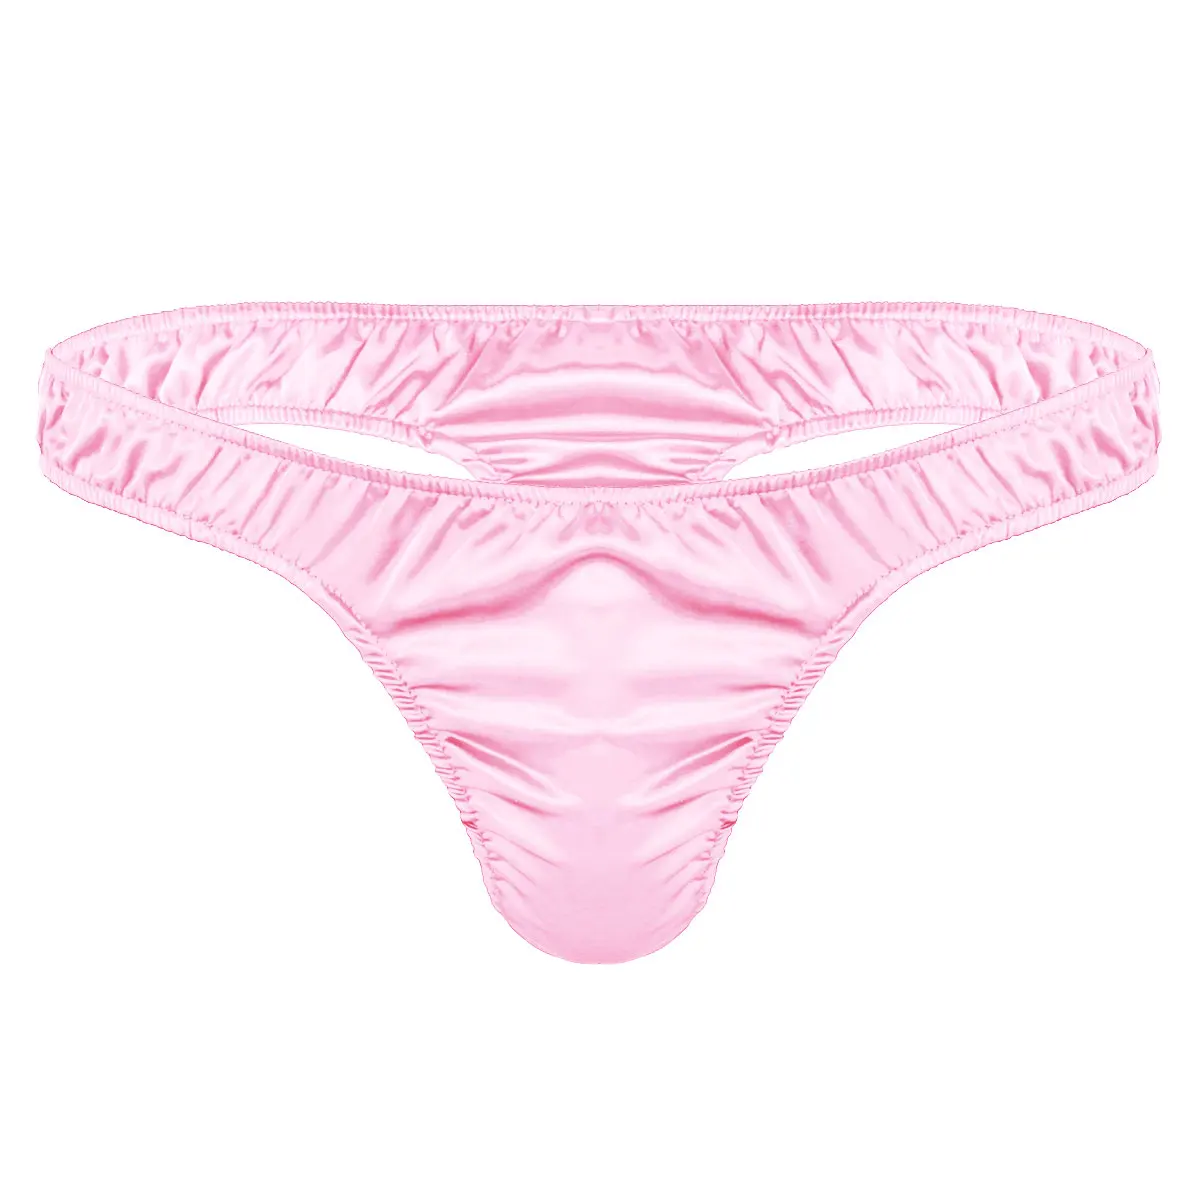 Сексуальные мужские плавки нижнее белье мягкие блестящие гофрированные с низким подъемом с высоким вырезом, бикини стринги нижнее белье мужские трусики - Цвет: Pink